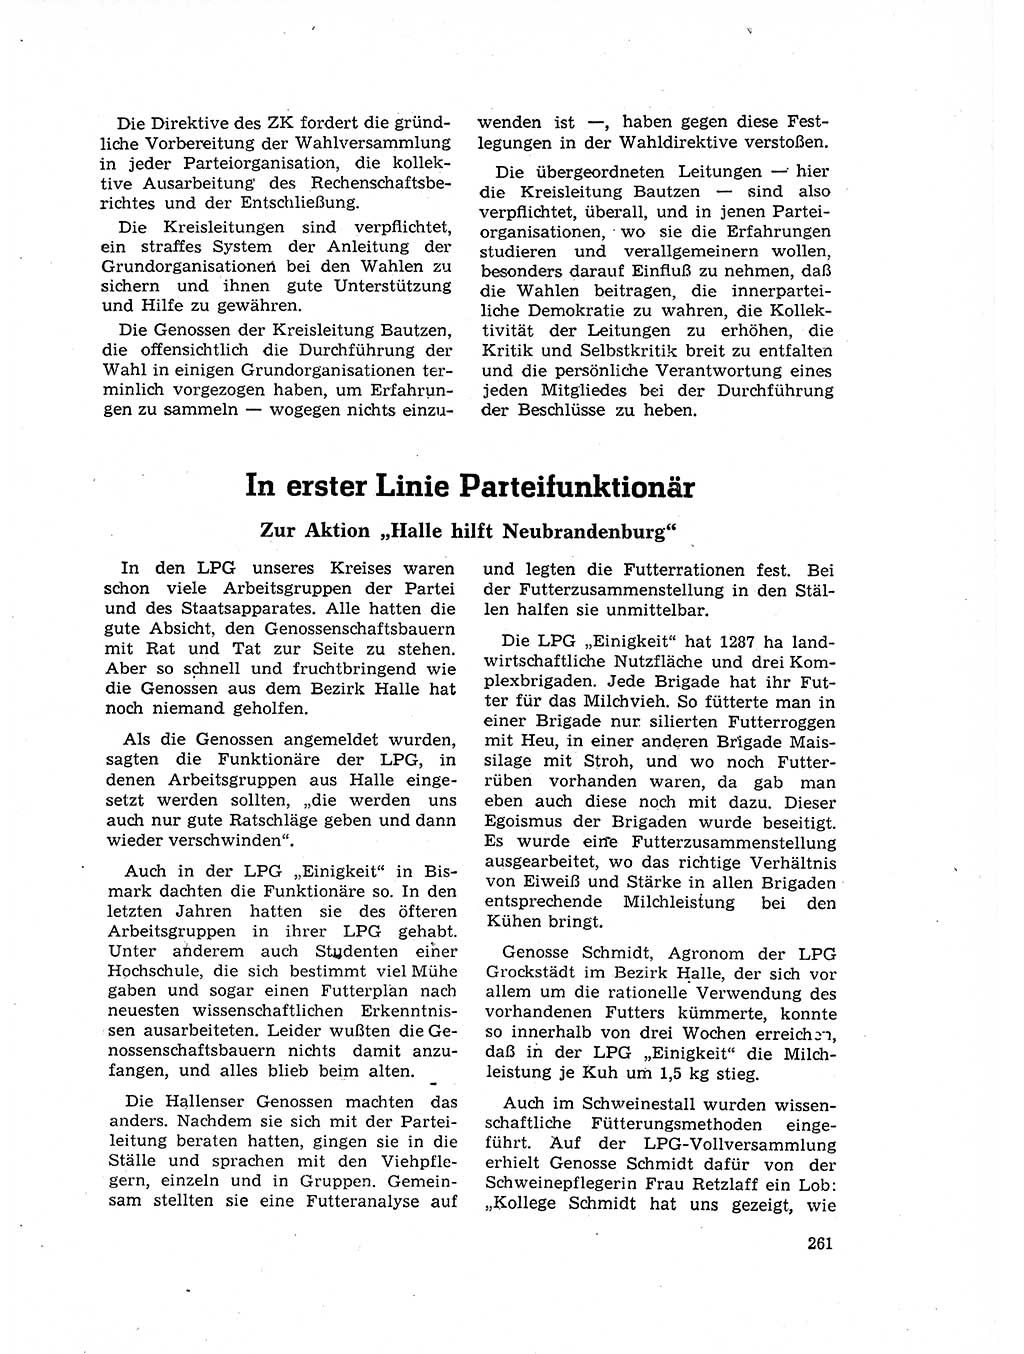 Neuer Weg (NW), Organ des Zentralkomitees (ZK) der SED (Sozialistische Einheitspartei Deutschlands) für Fragen des Parteilebens, 17. Jahrgang [Deutsche Demokratische Republik (DDR)] 1962, Seite 261 (NW ZK SED DDR 1962, S. 261)